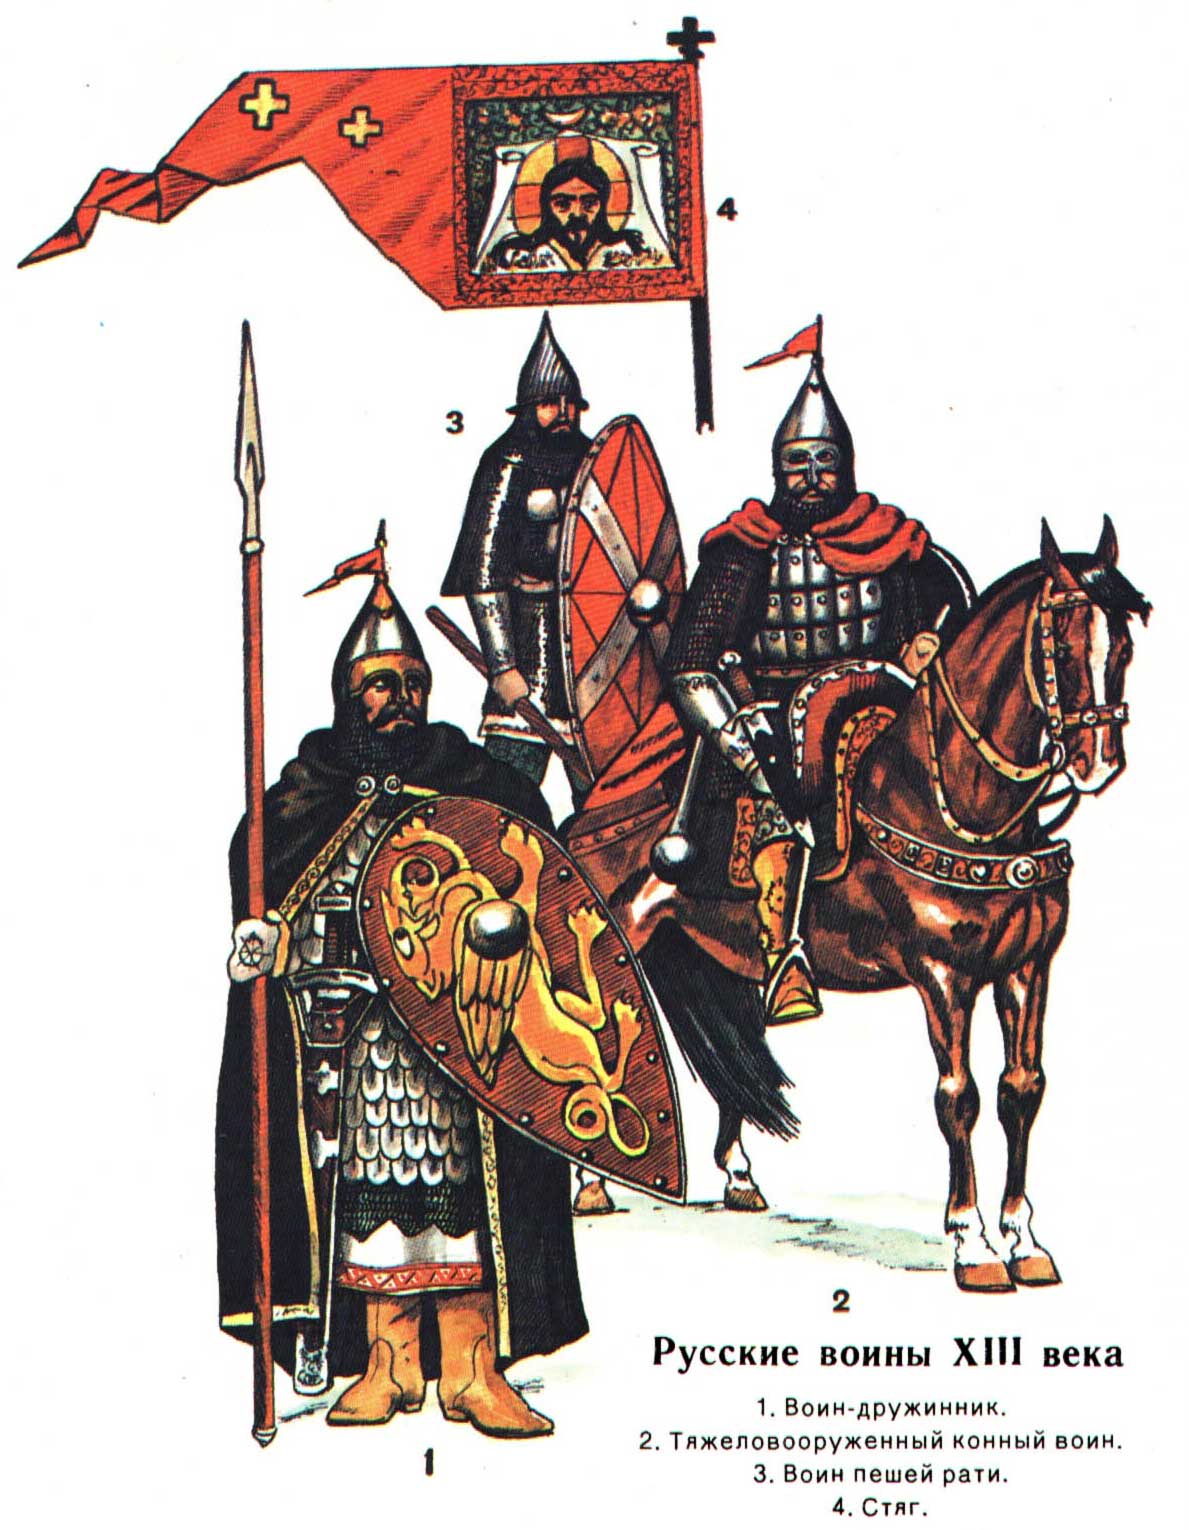 Русские воины XIII века - реконструкция